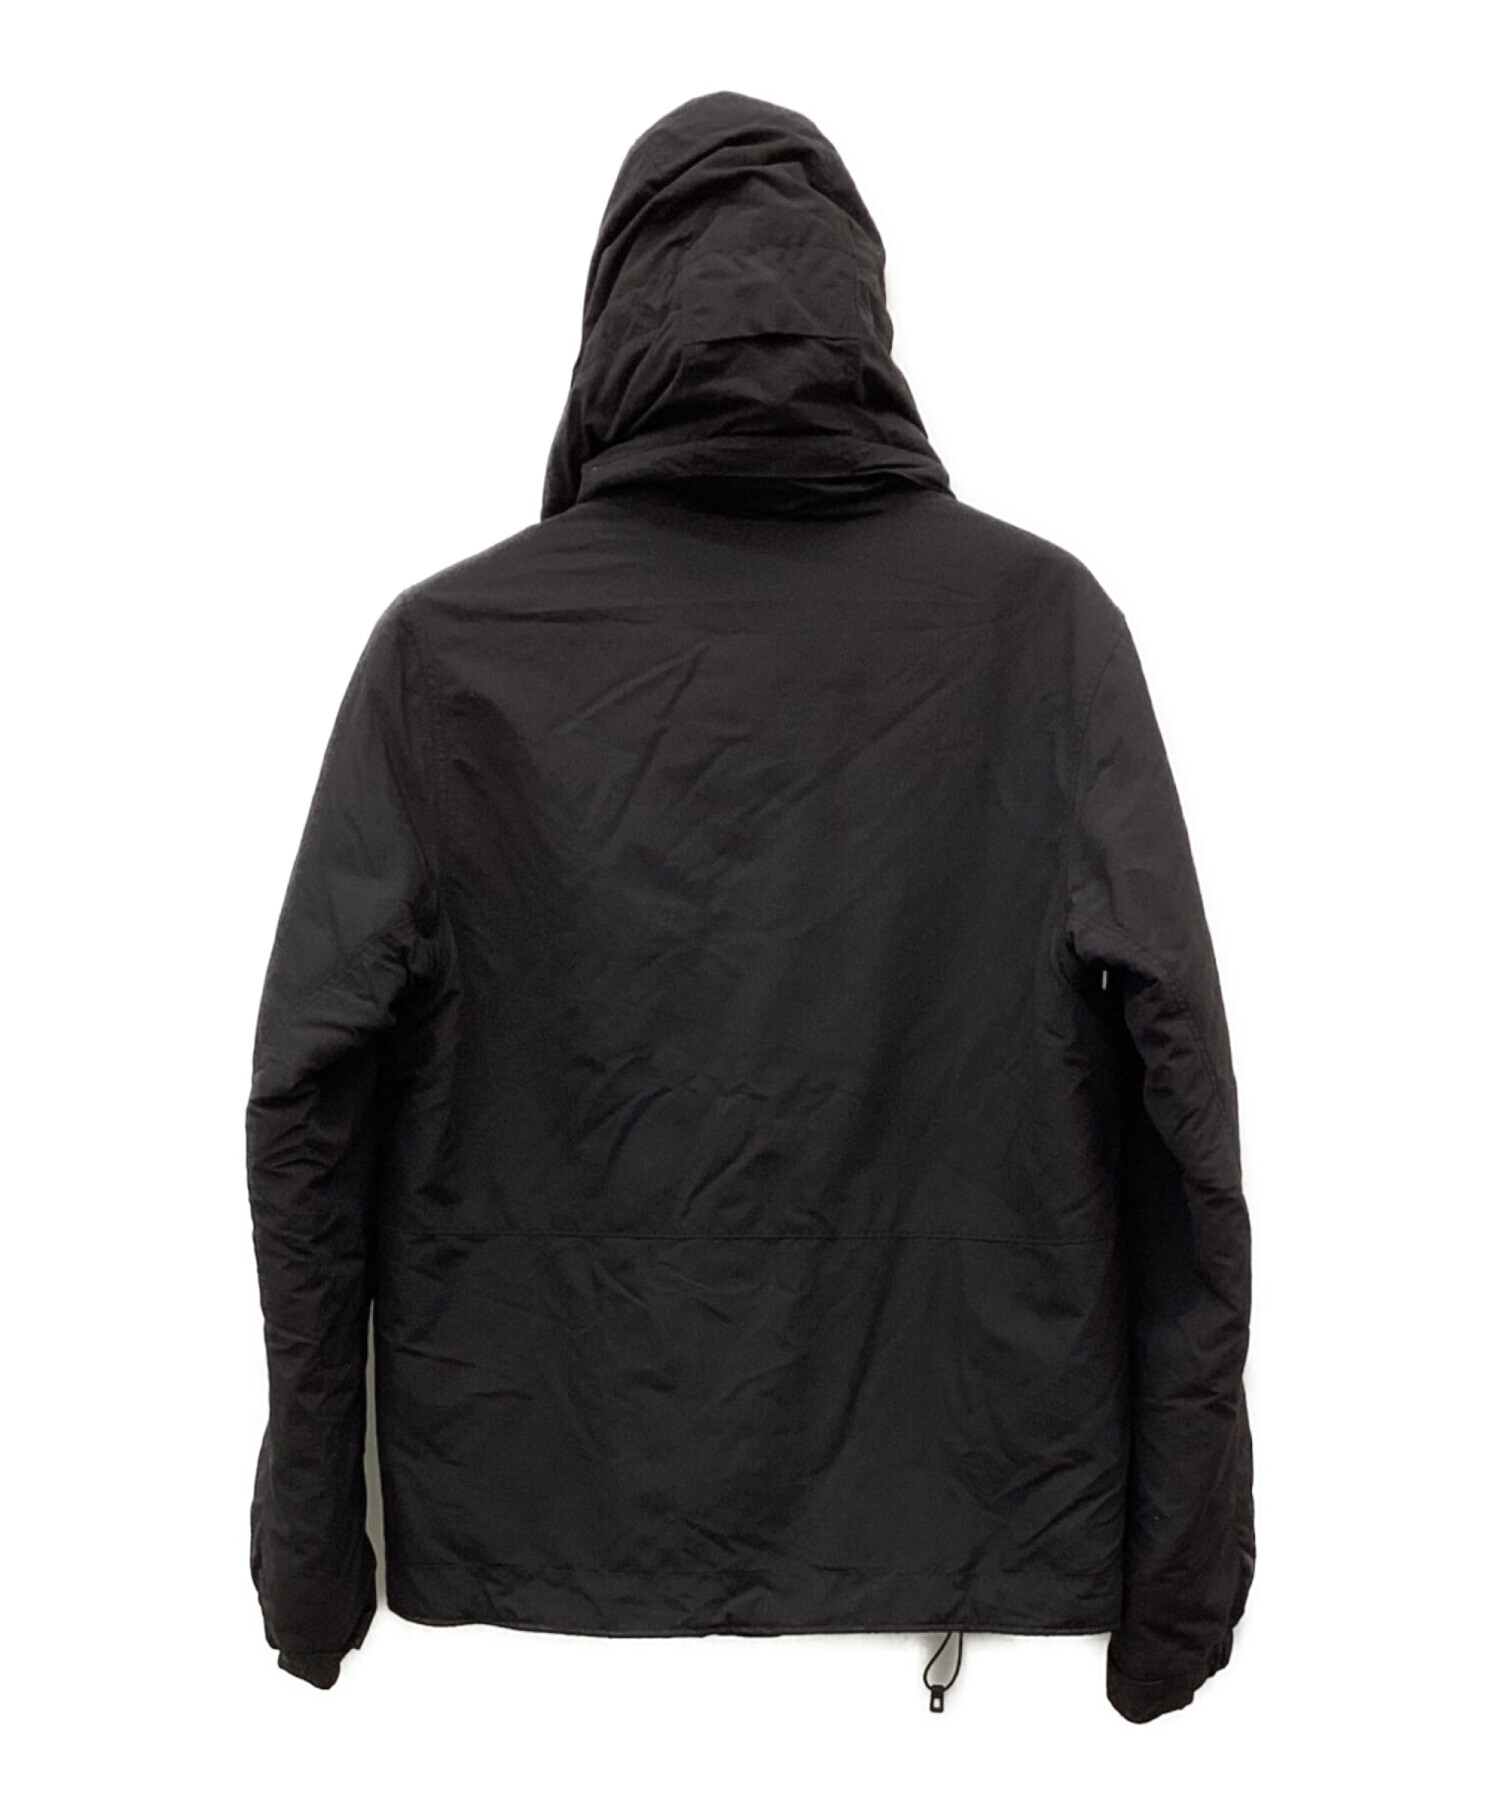 Patagonia (パタゴニア) イスマスジャケット ブラック サイズ:XS